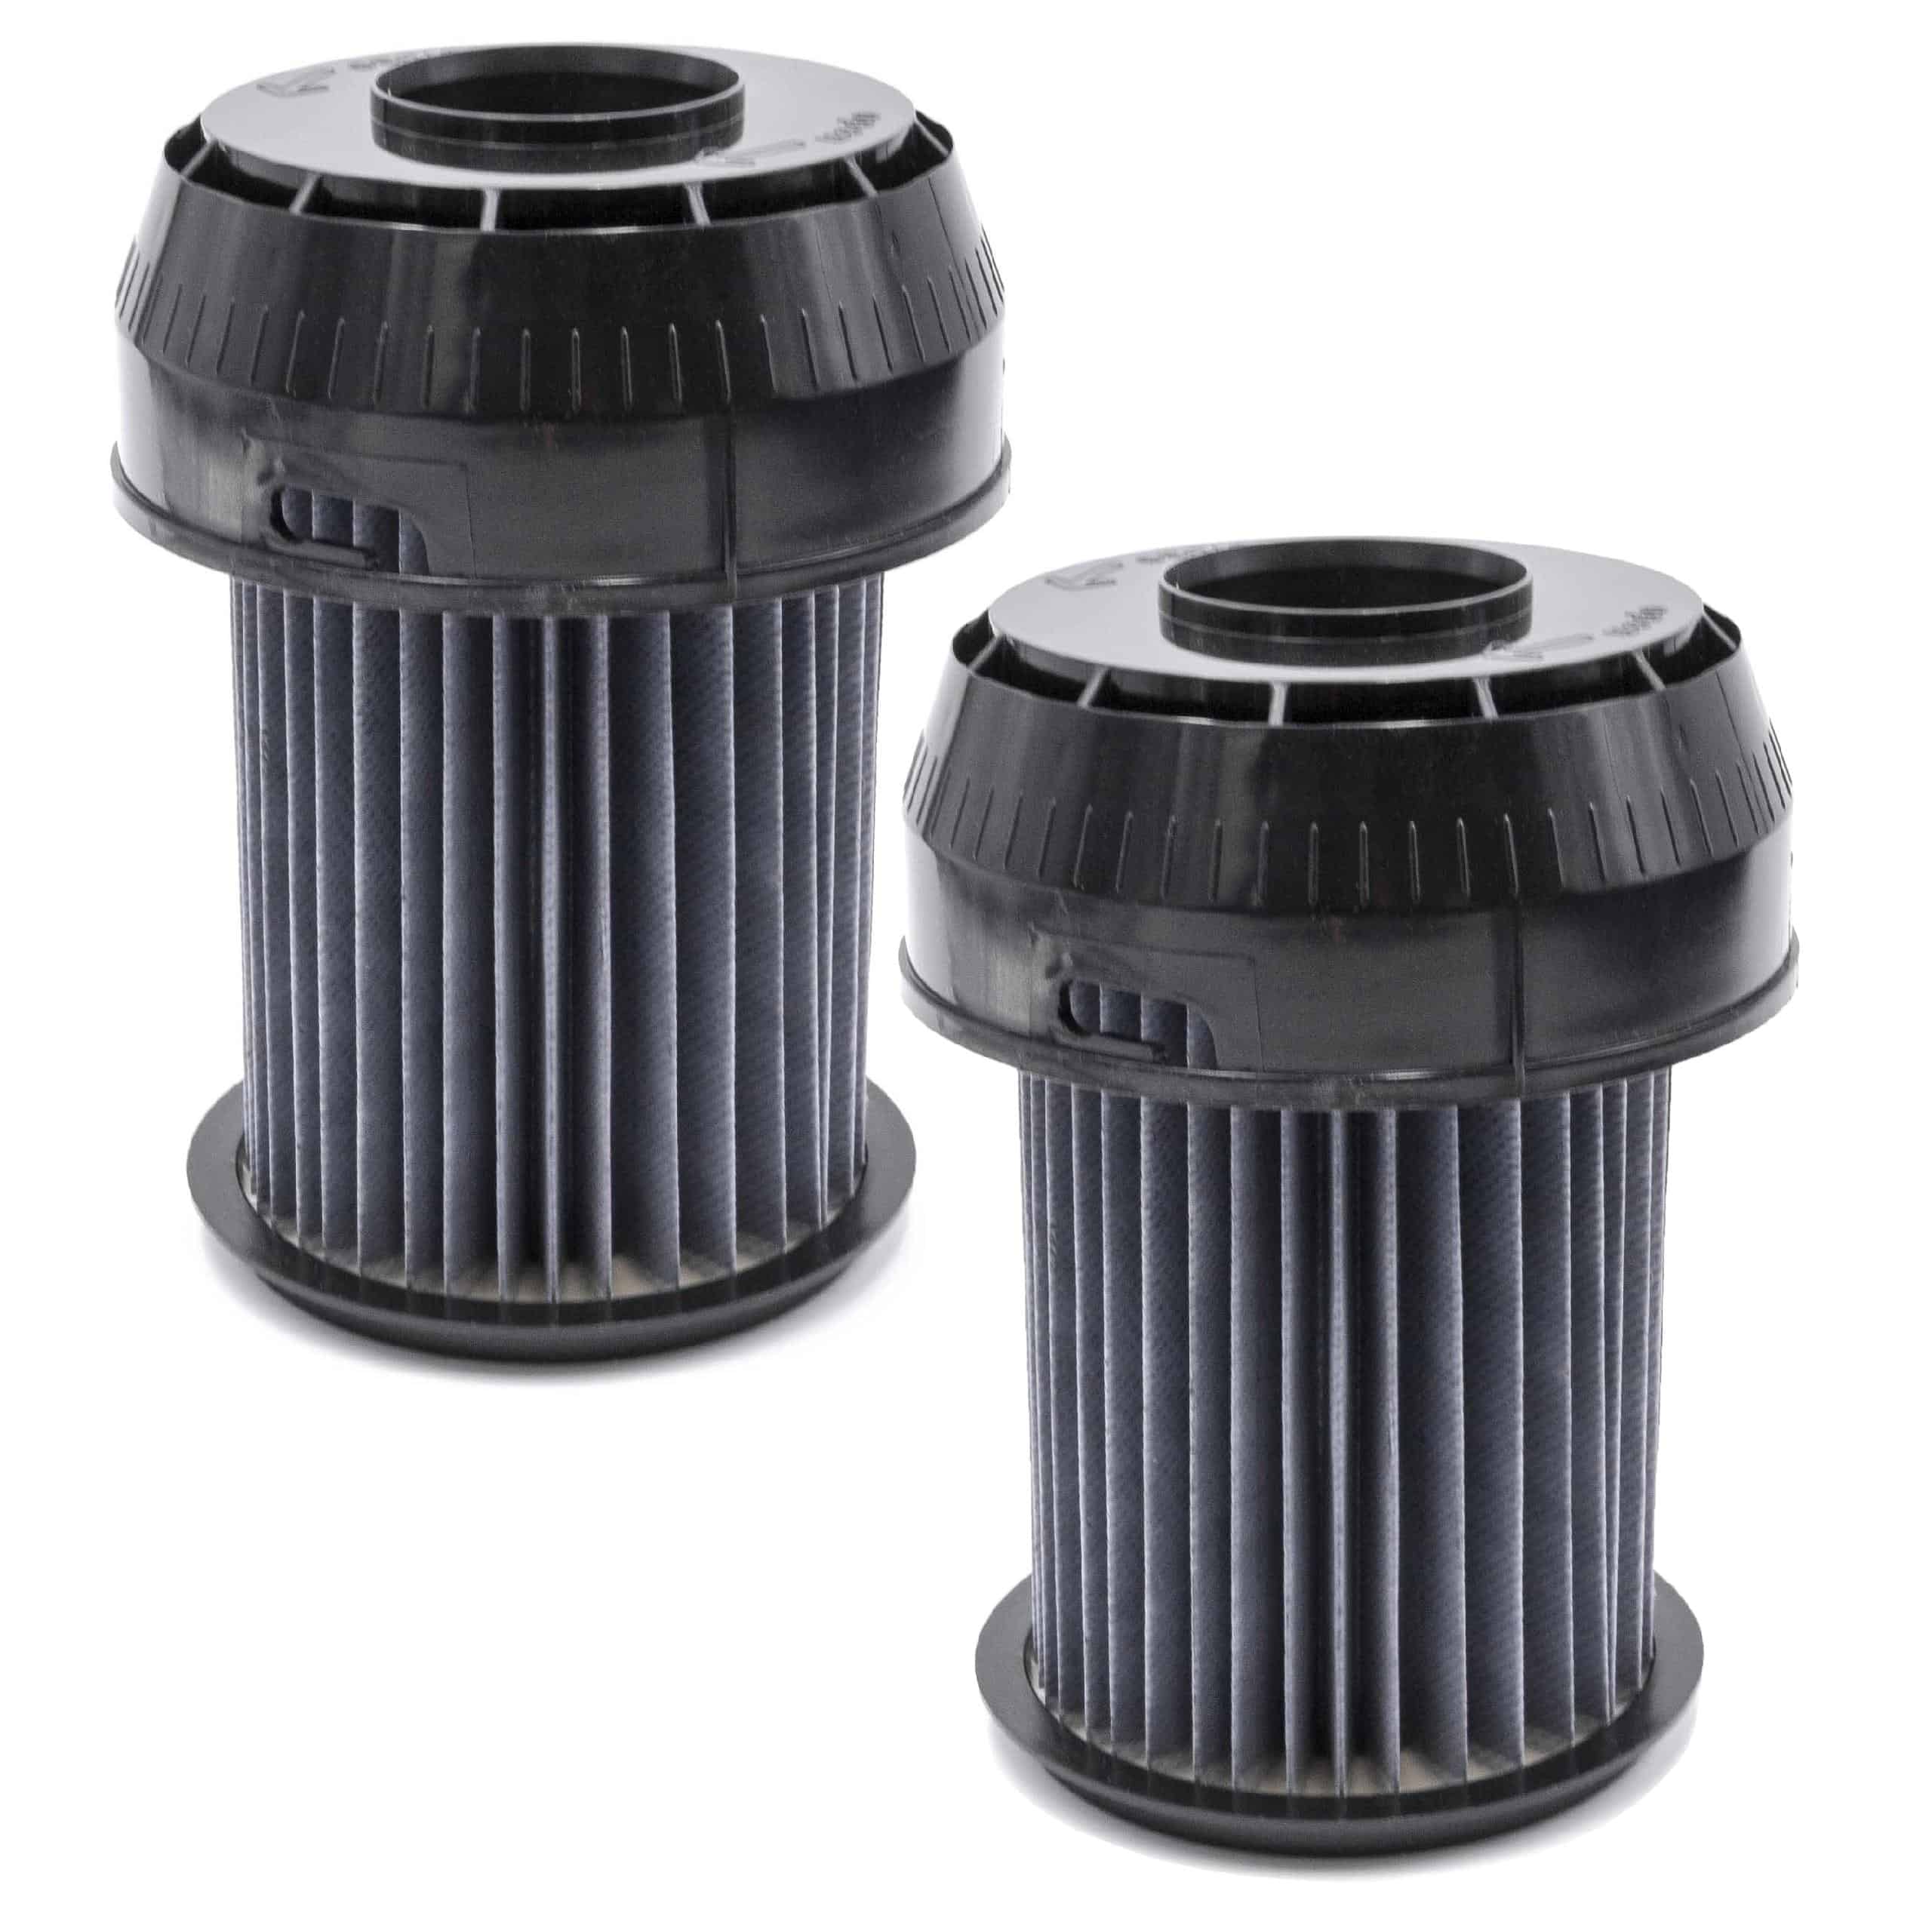 2x Filtro sostituisce Bosch 2609256d46, 00649841 per aspirapolvere - filtro a lamelle, nero